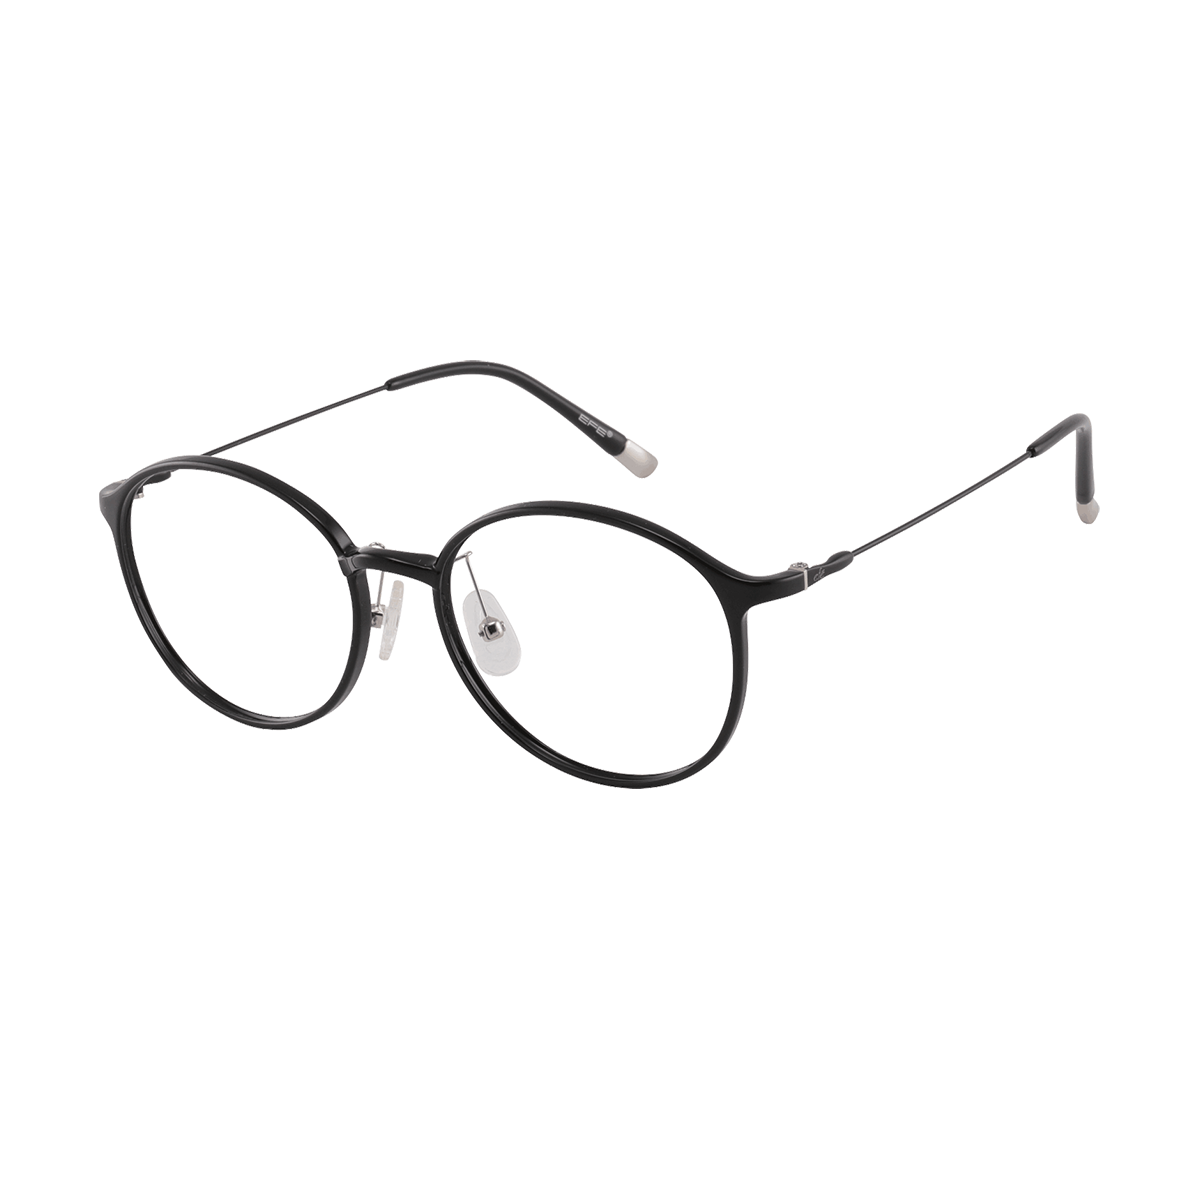 Ellsworth - Round Black Reading Glasses for Men & Women